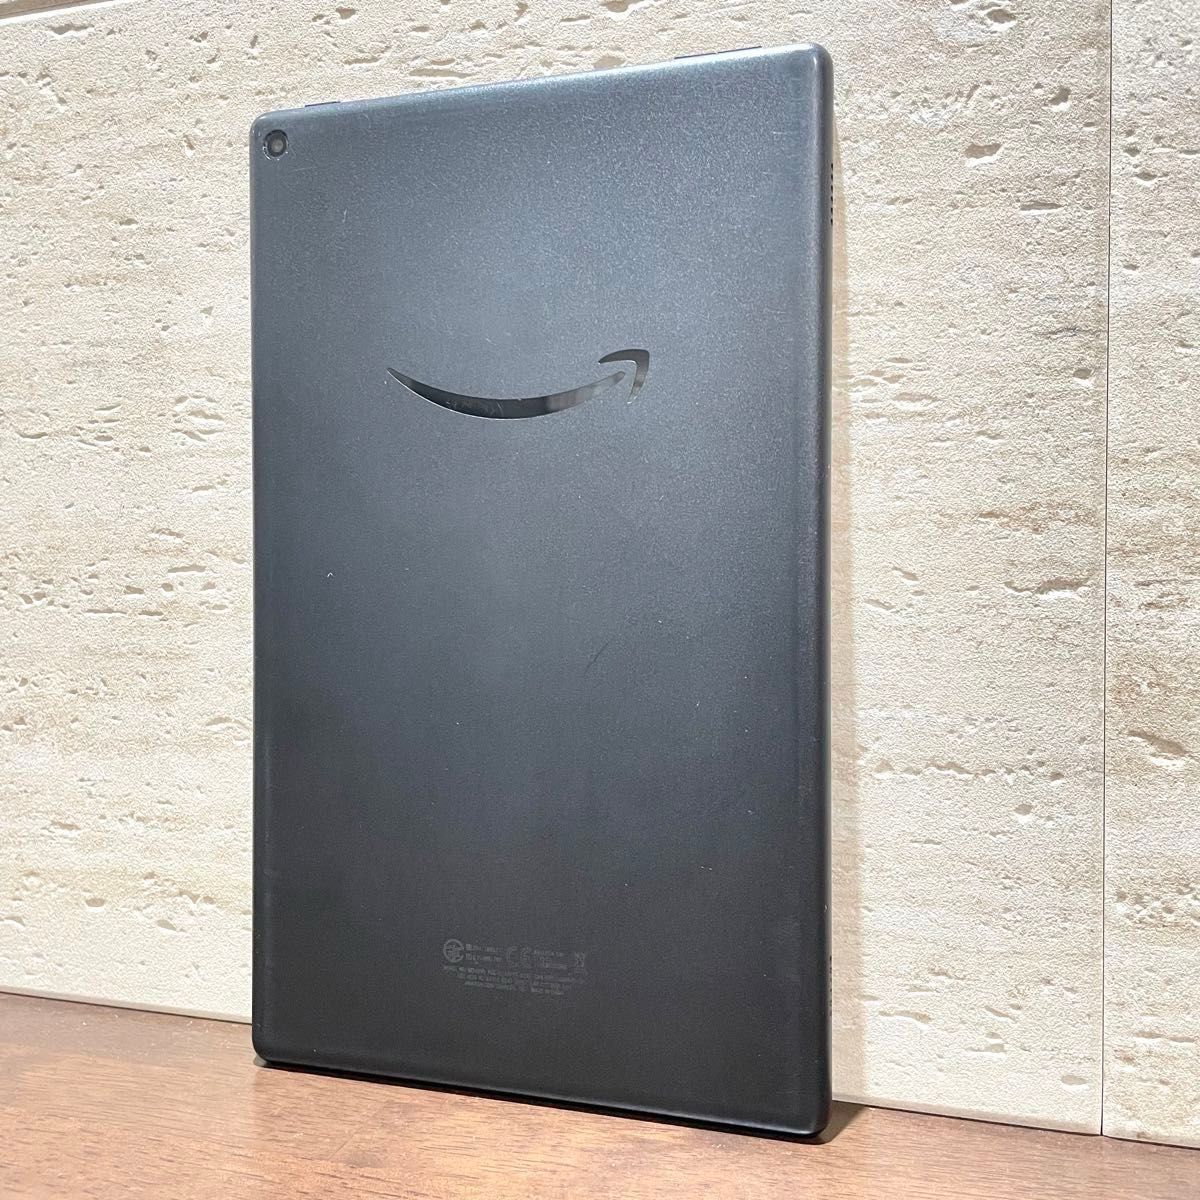 Amazon fire HD 10 第9世代 2019年モデル ブラック 32GB 中古品